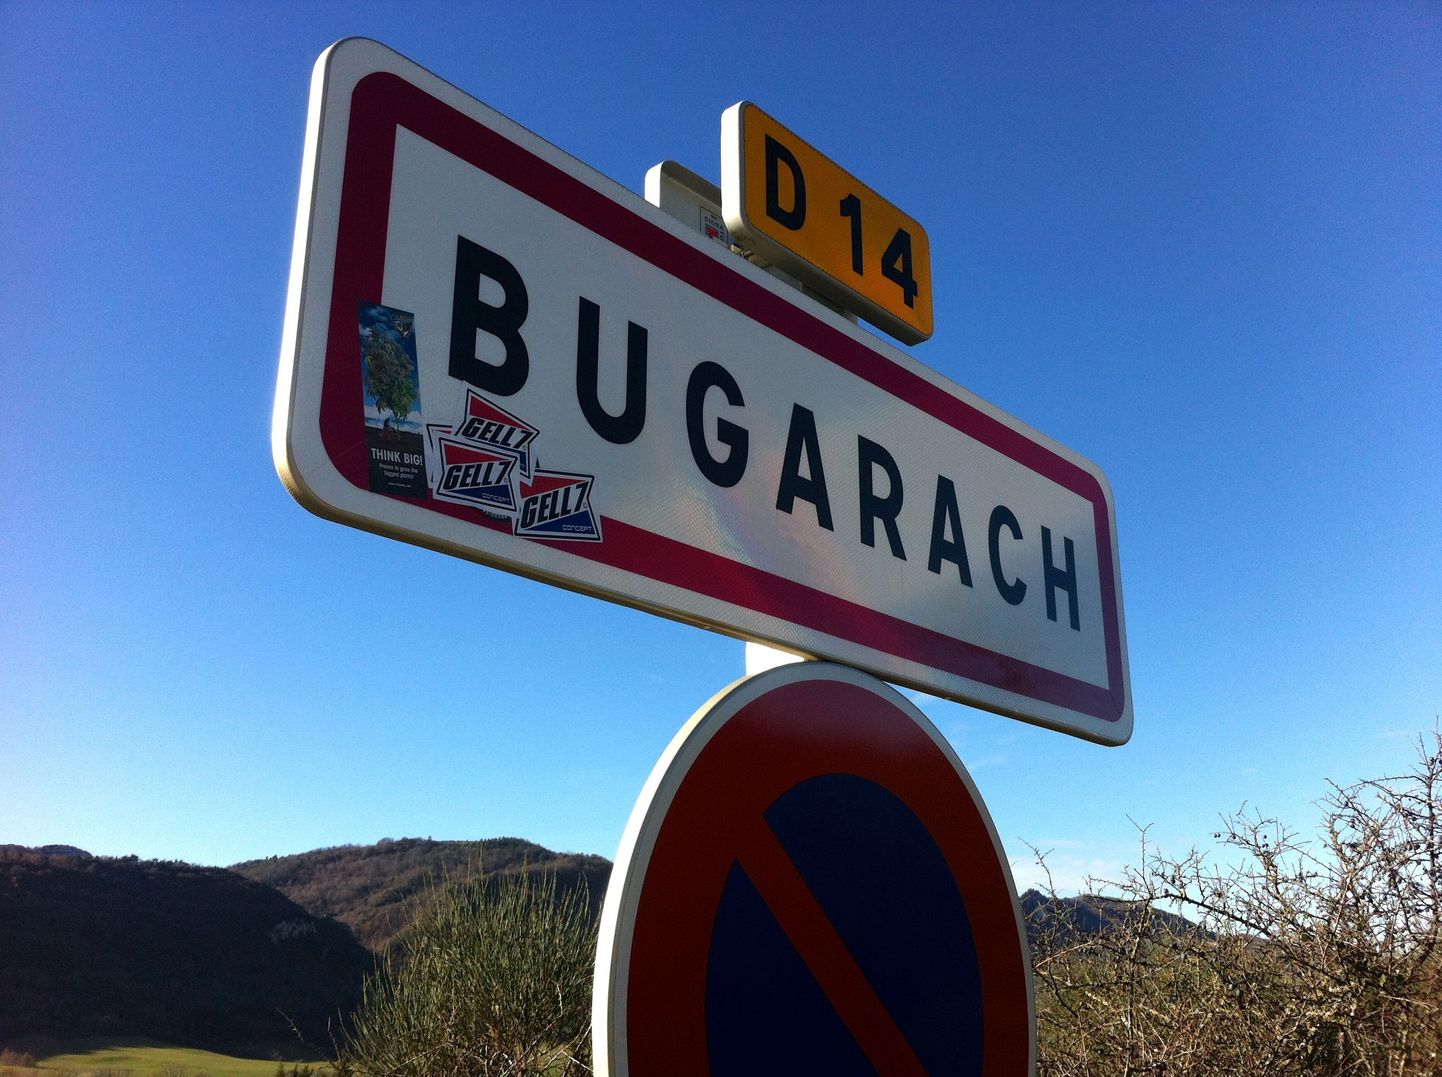 Bugarach - koht, kus maailm ei lõppegi.